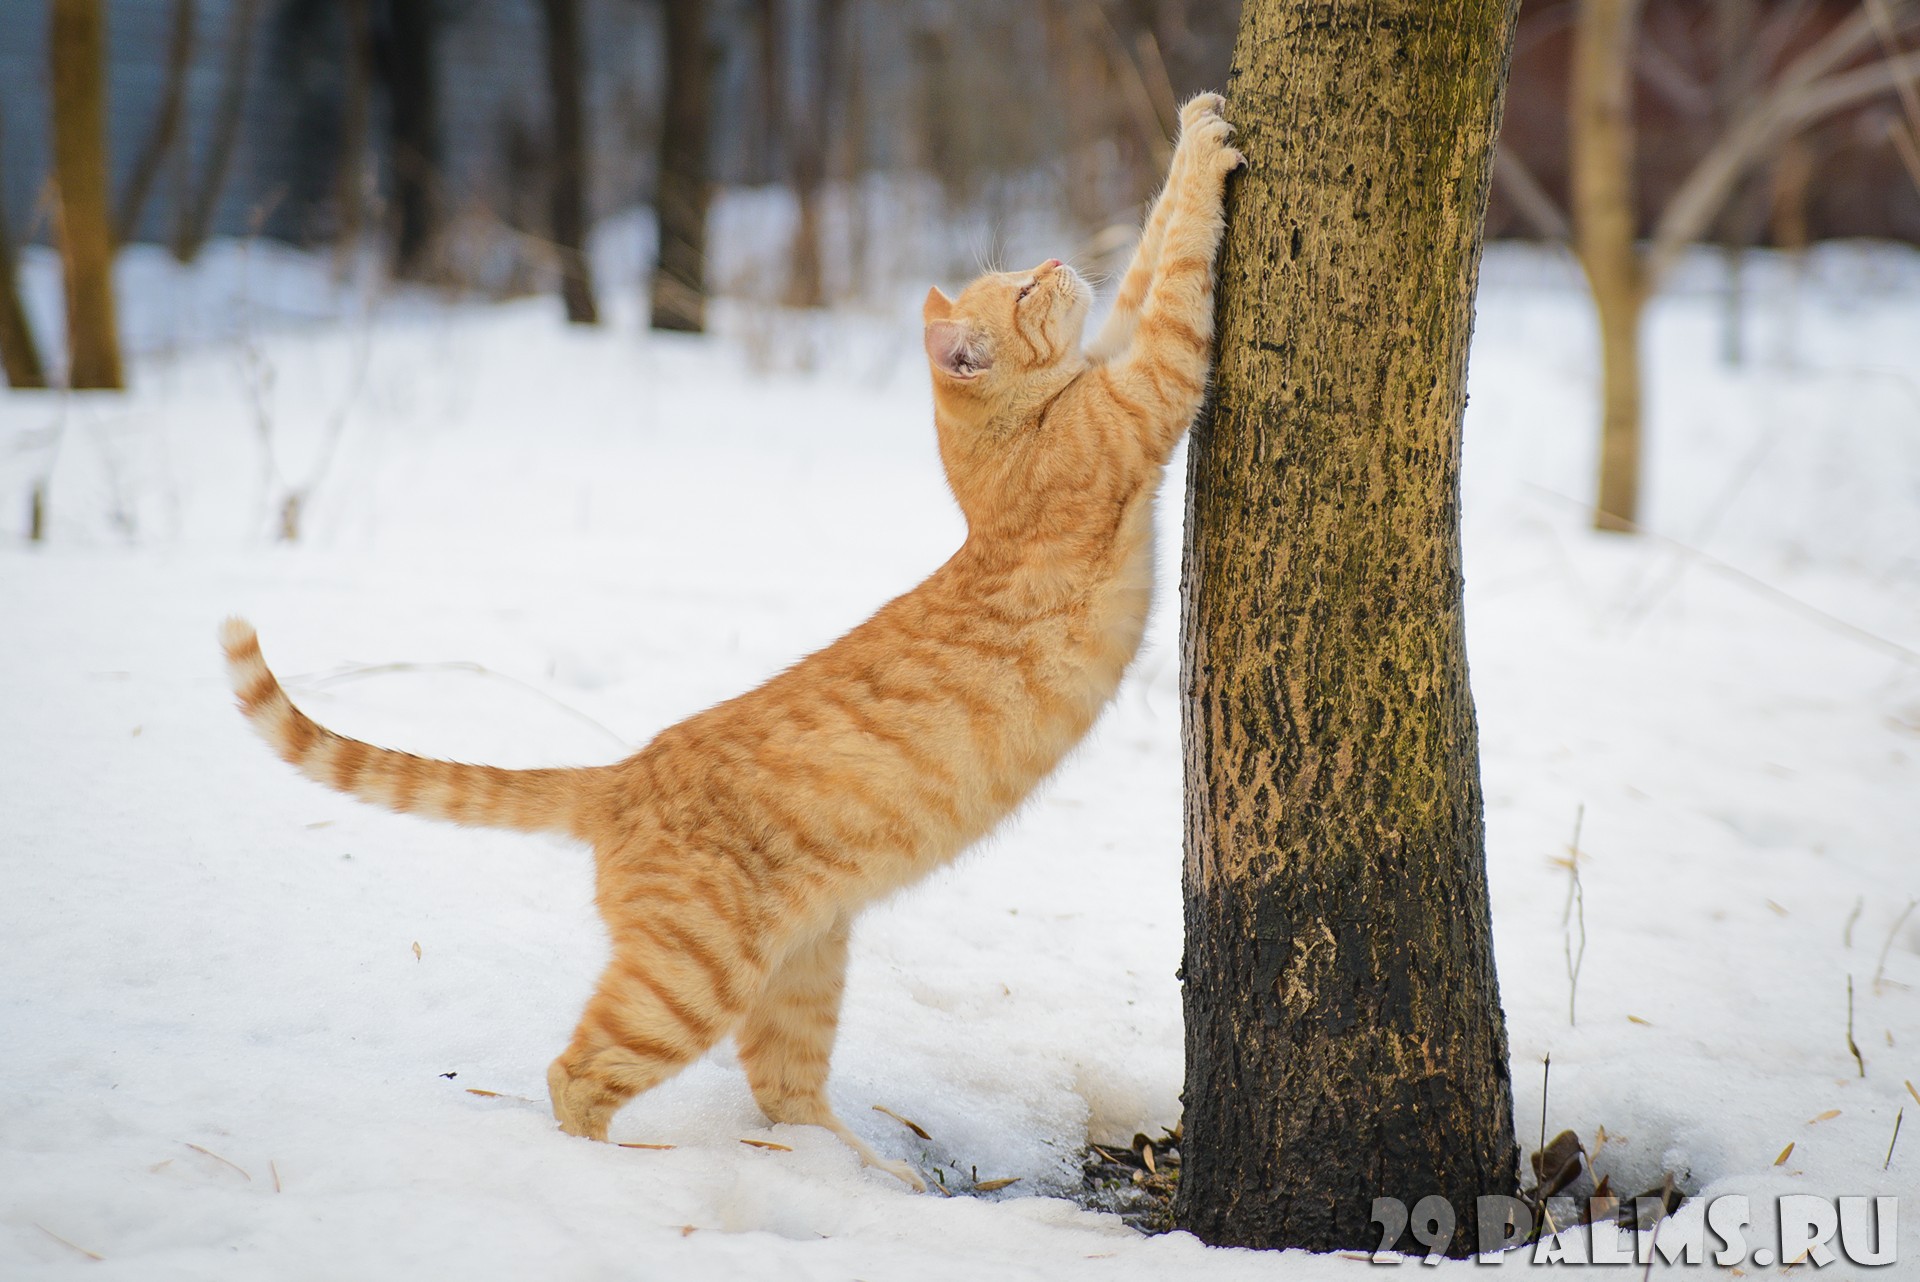 Кот потягивается на снегу